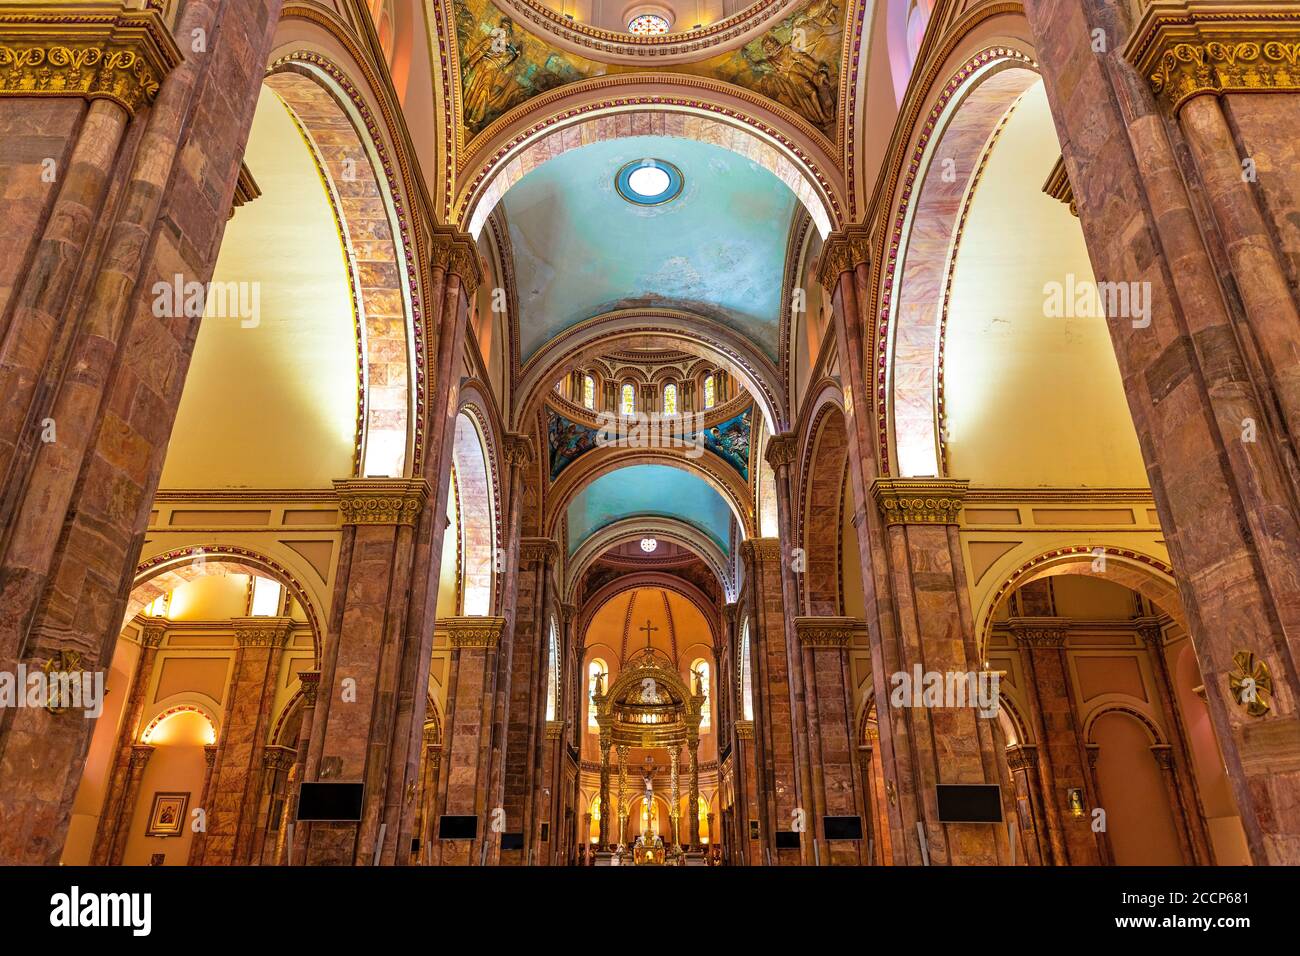 Interno della nuova Cattedrale in stile neomanico, neogotico, neobarocco e neobizantino, Cuenca, Ecuador. Foto Stock